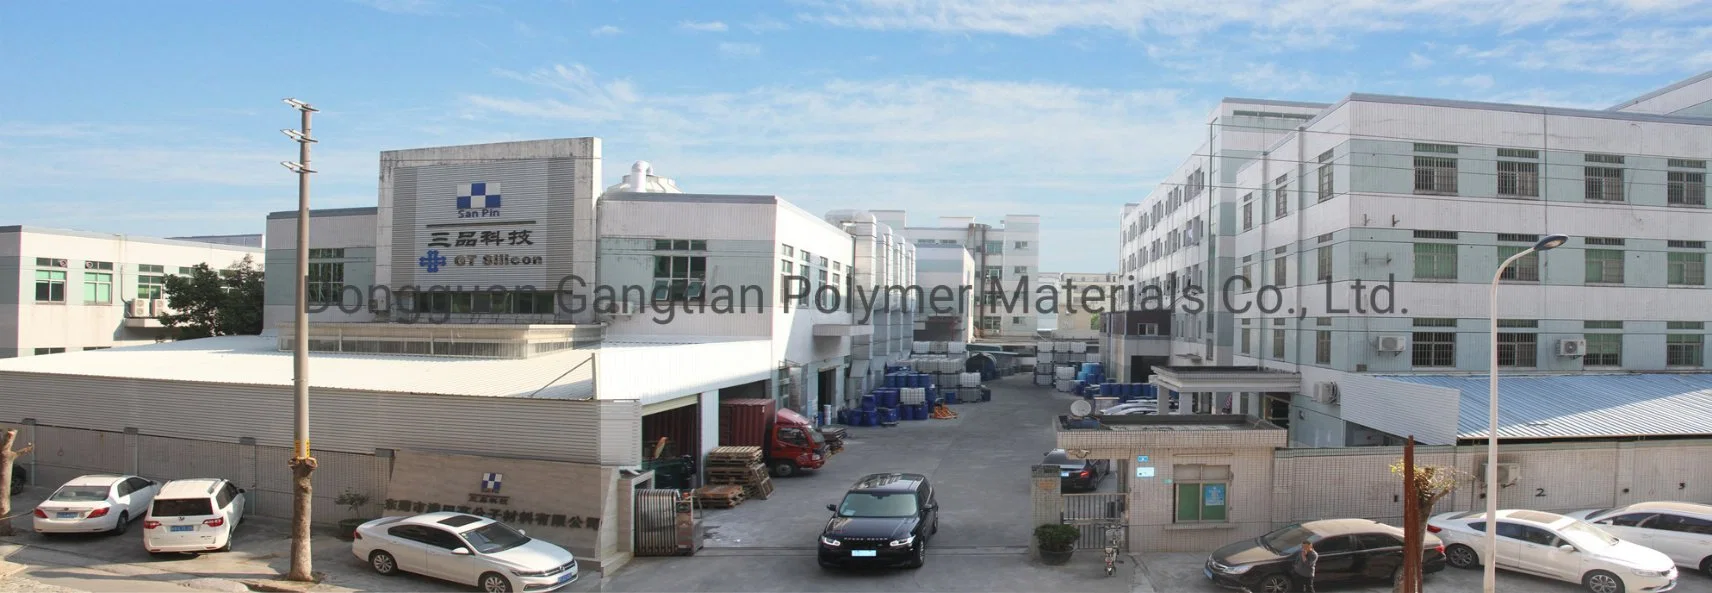 Fabricante de China la condensación de RTV caucho de silicona de catalizador para la fabricación de cemento yeso Moldes de silicona